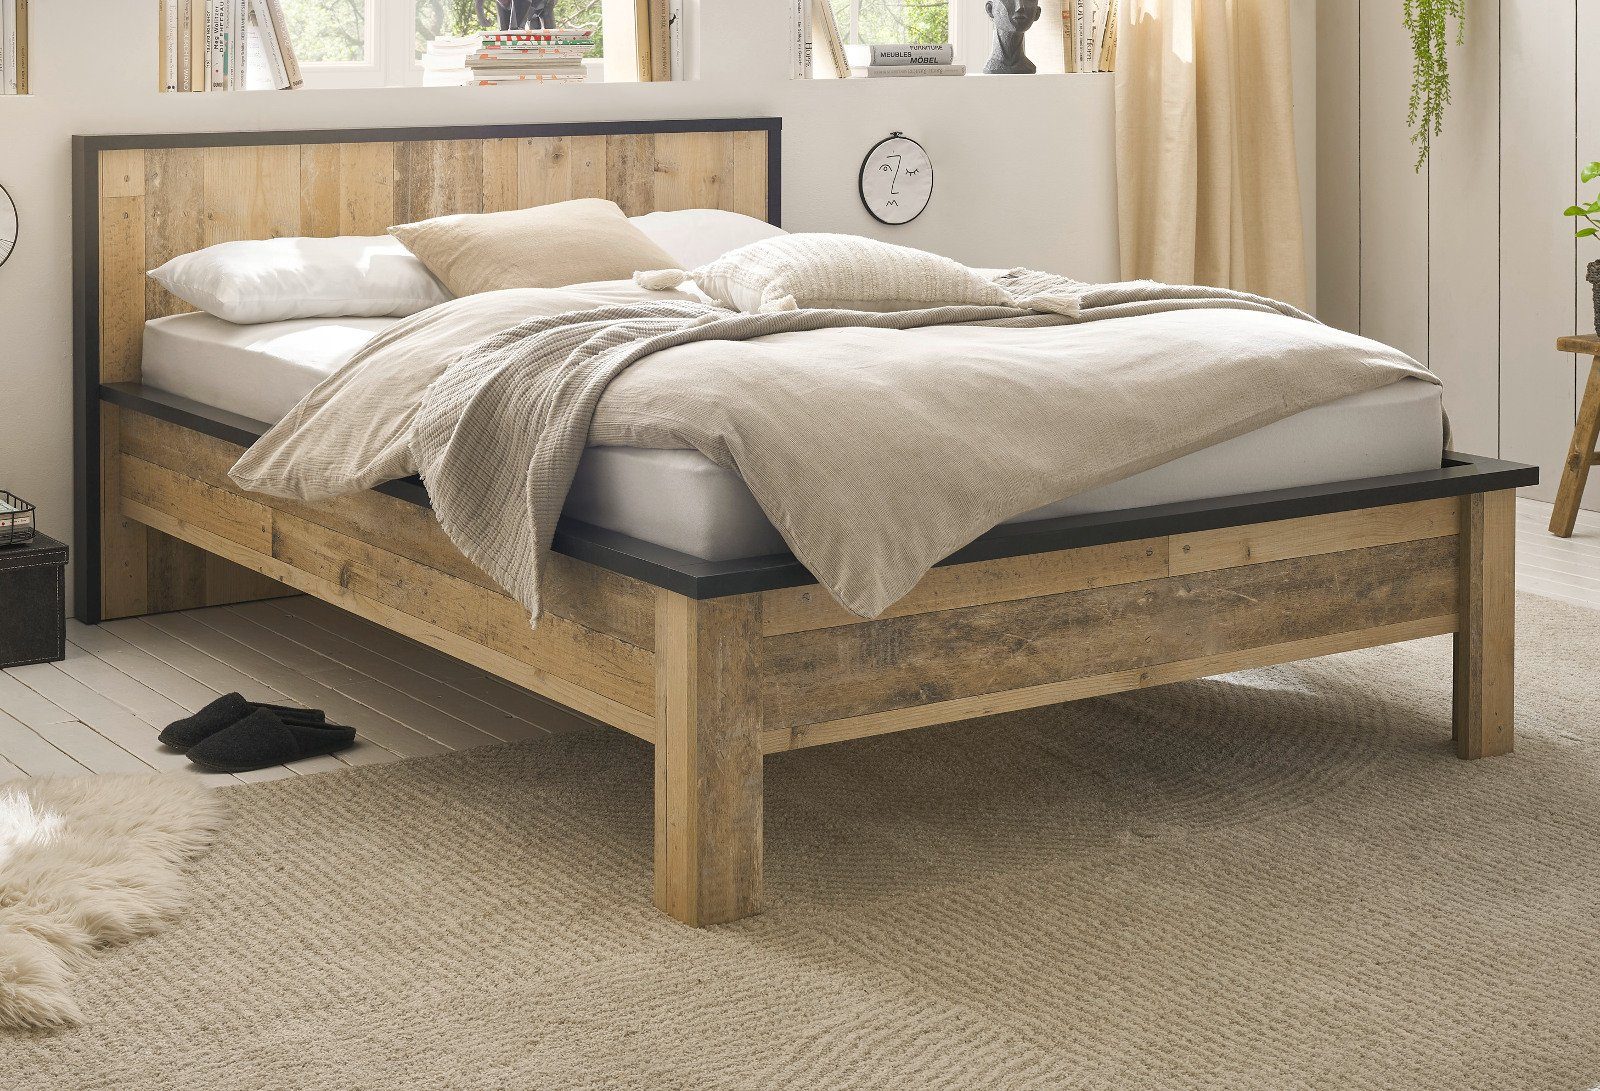 Furn.Design Einzelbett Stove (Bett in Used Wood und Anthrazit, Liegefläche 140 x 200 cm), höhenverstellbar